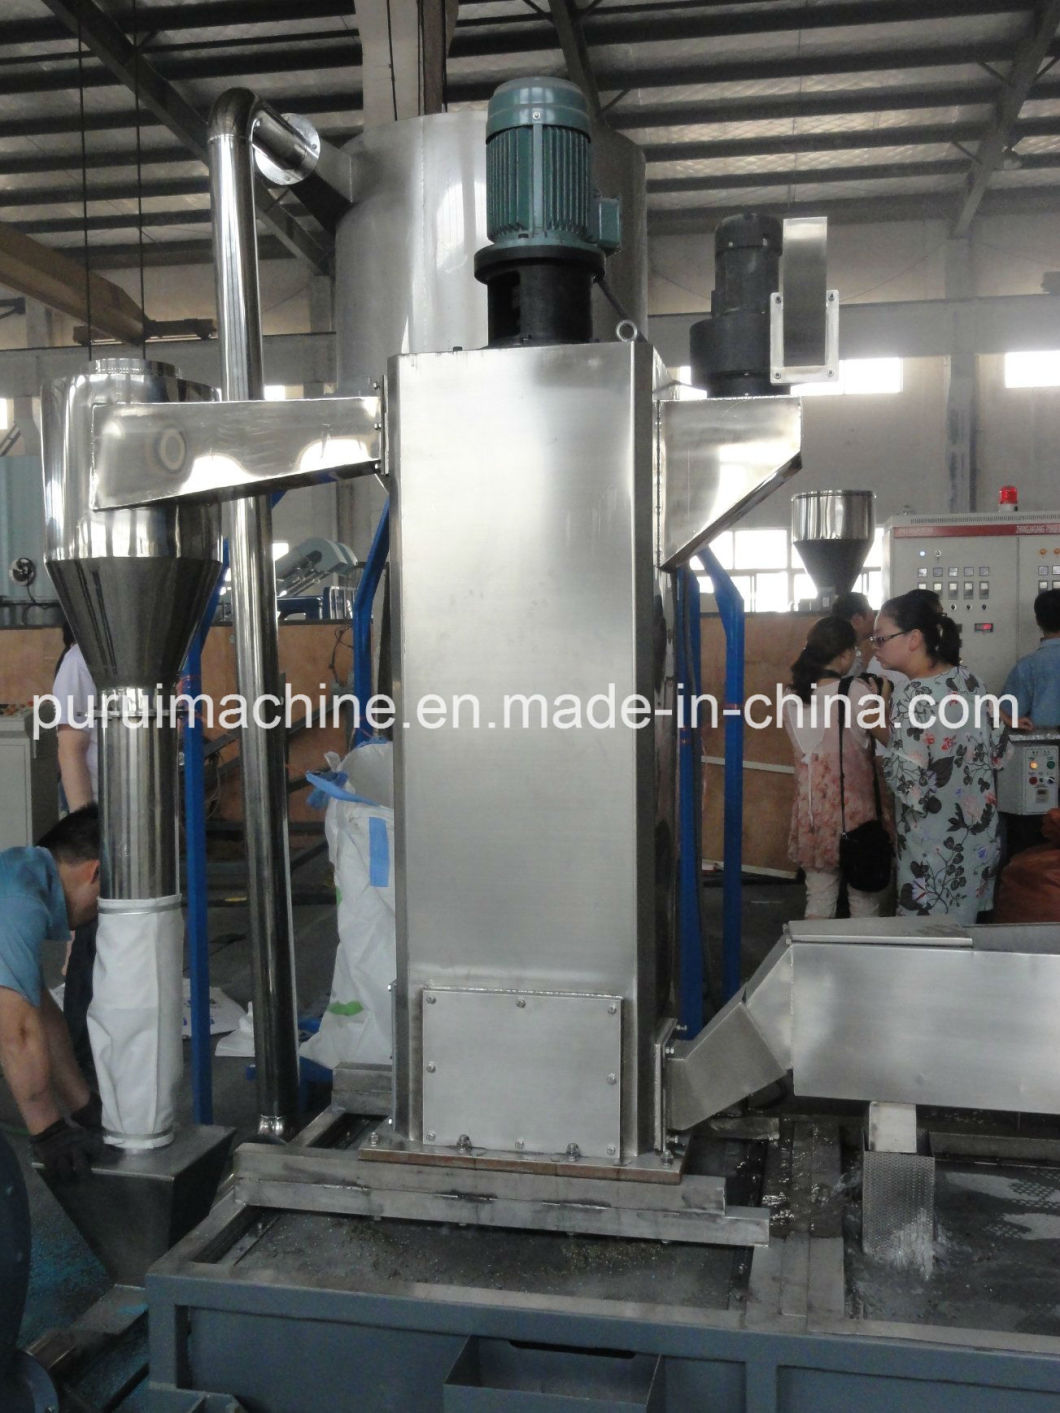 Zhangjiagang City Plastic Recycling Machine for Recycling HDPE Bottle